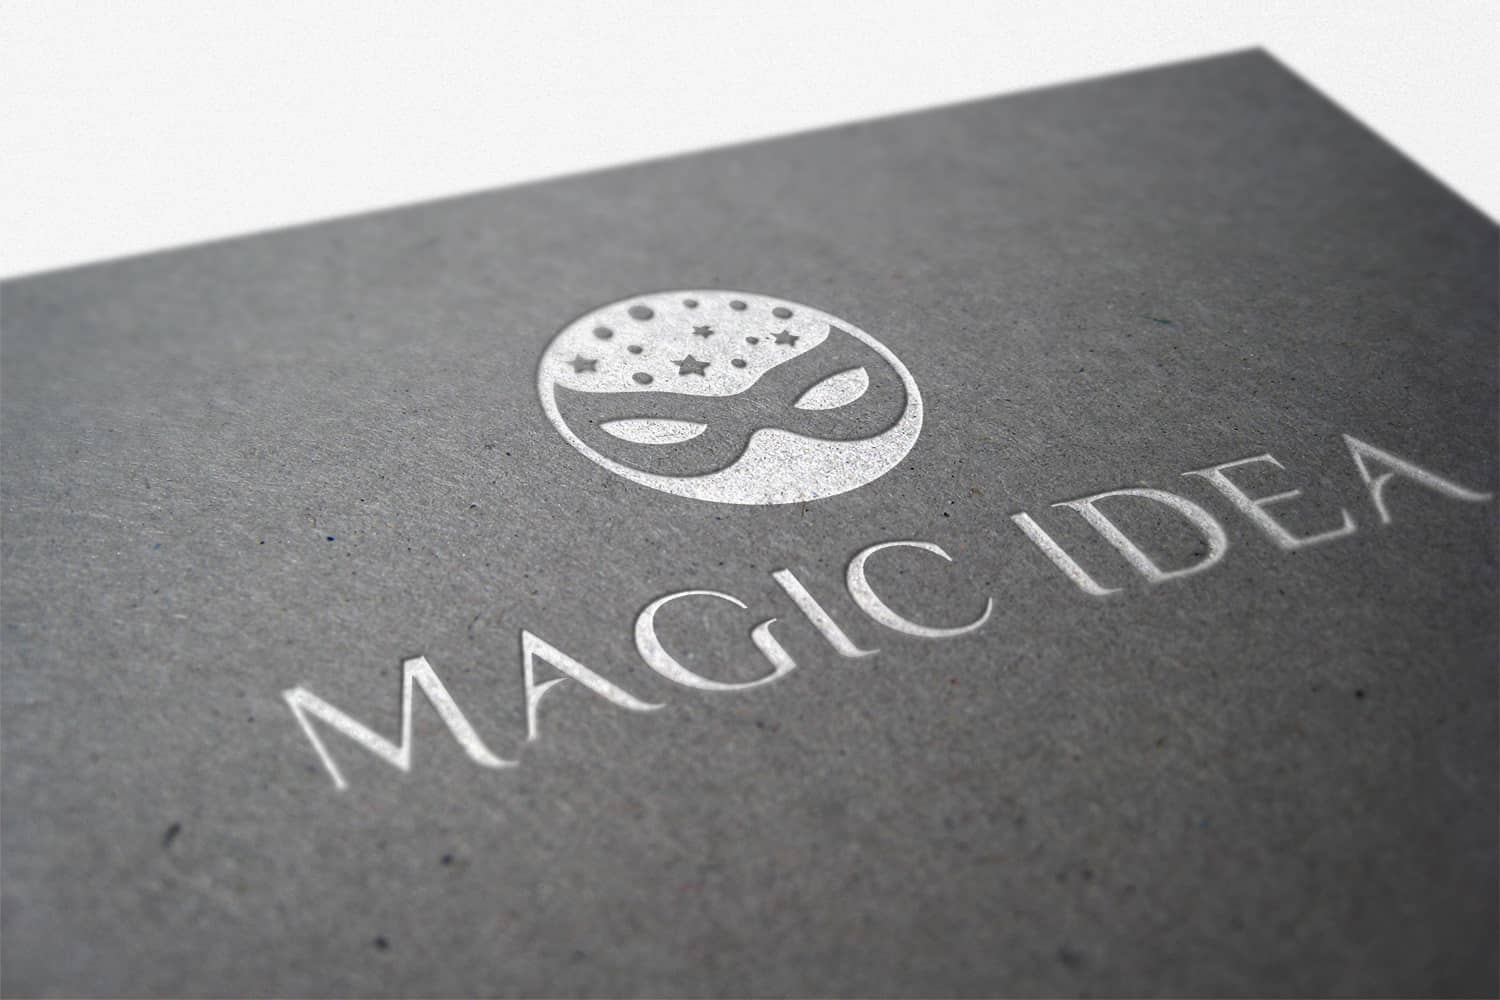 Magic Idea Logo Template